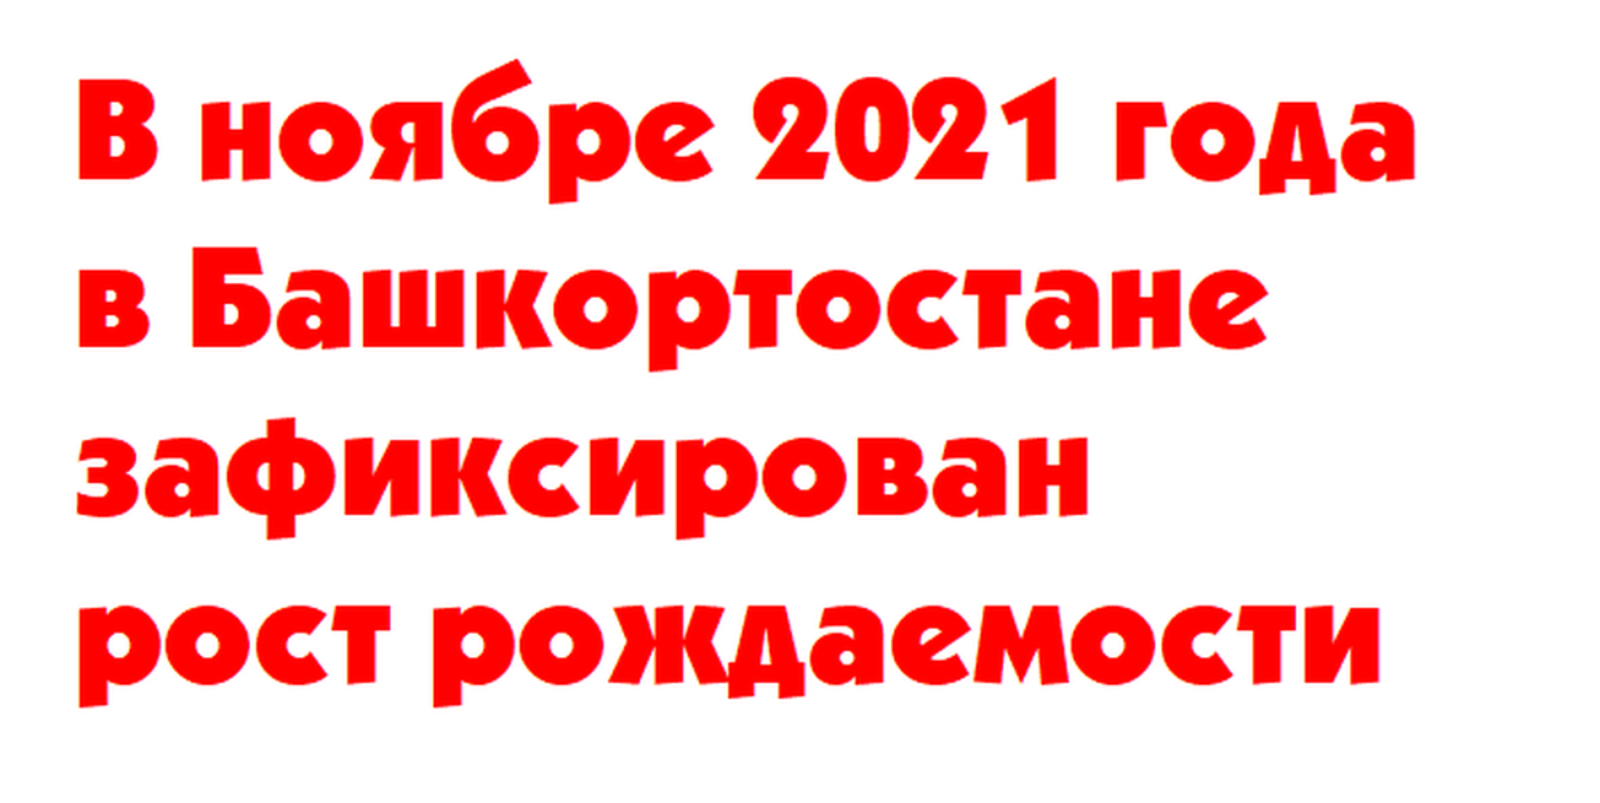 В ноябре 2021 года в Башкортостане зафиксирован рост рождаемости